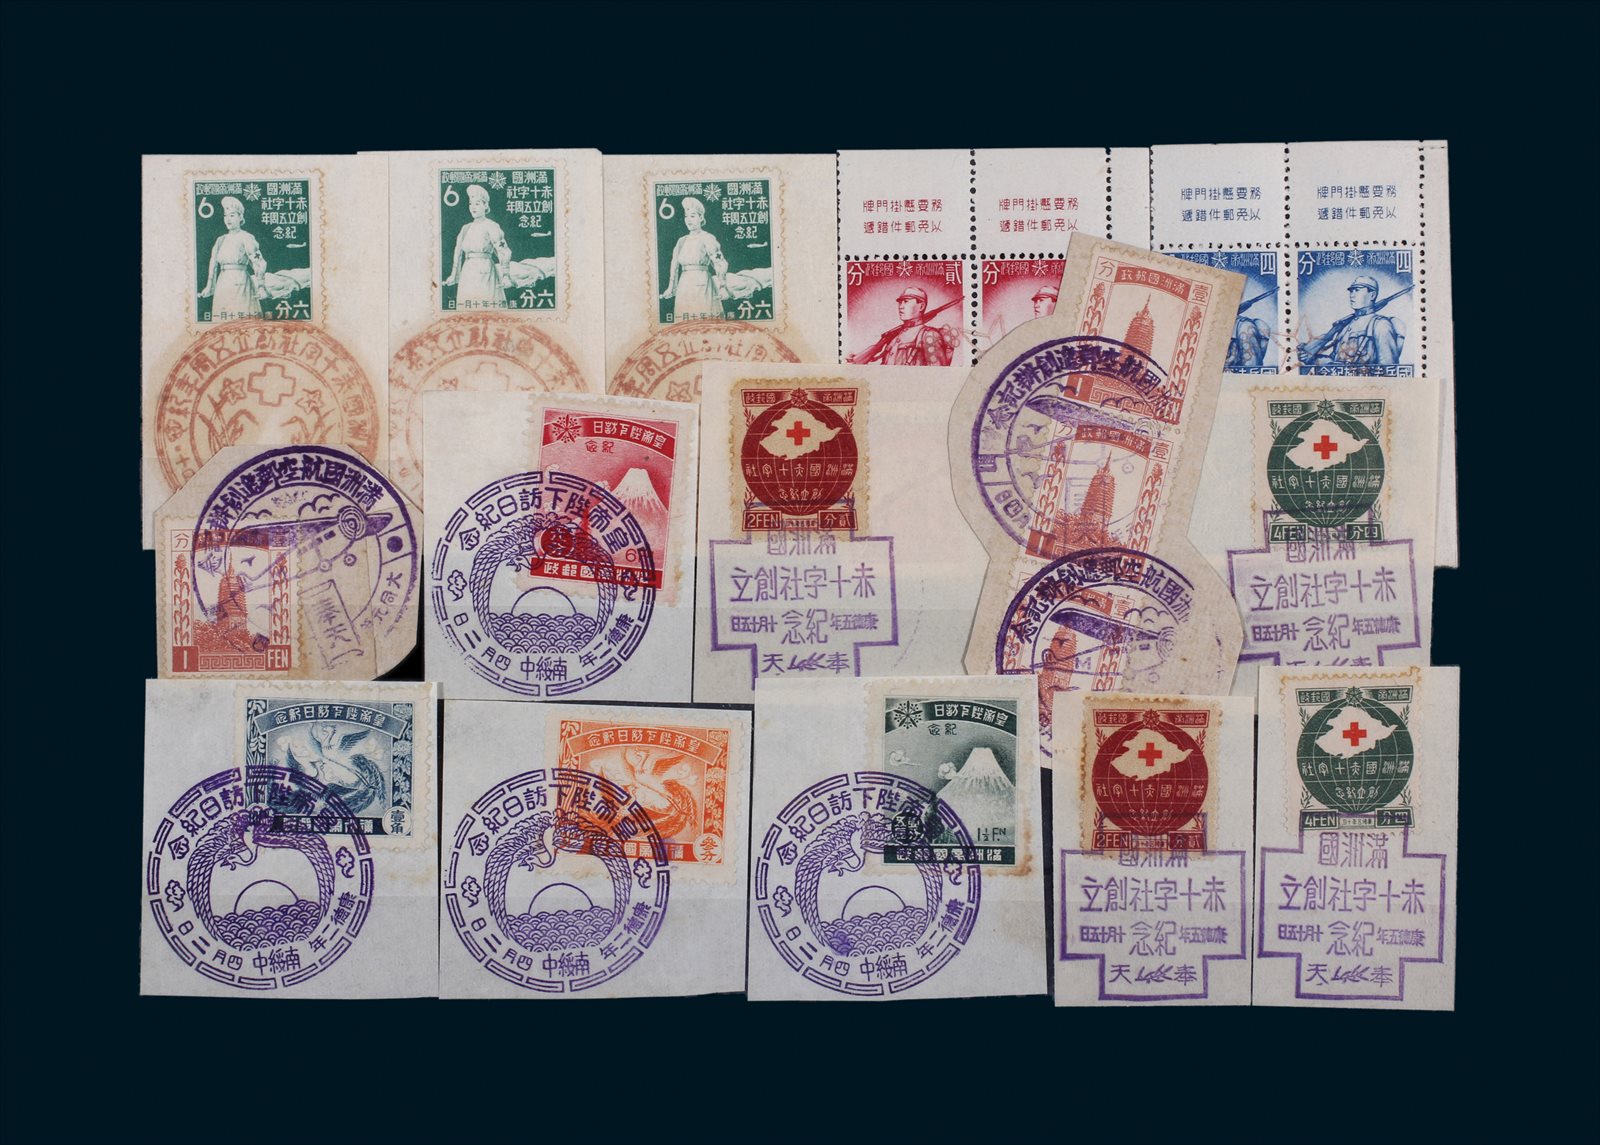 伪满洲国纪念邮票盖纪念戳剪片、四方联共15件